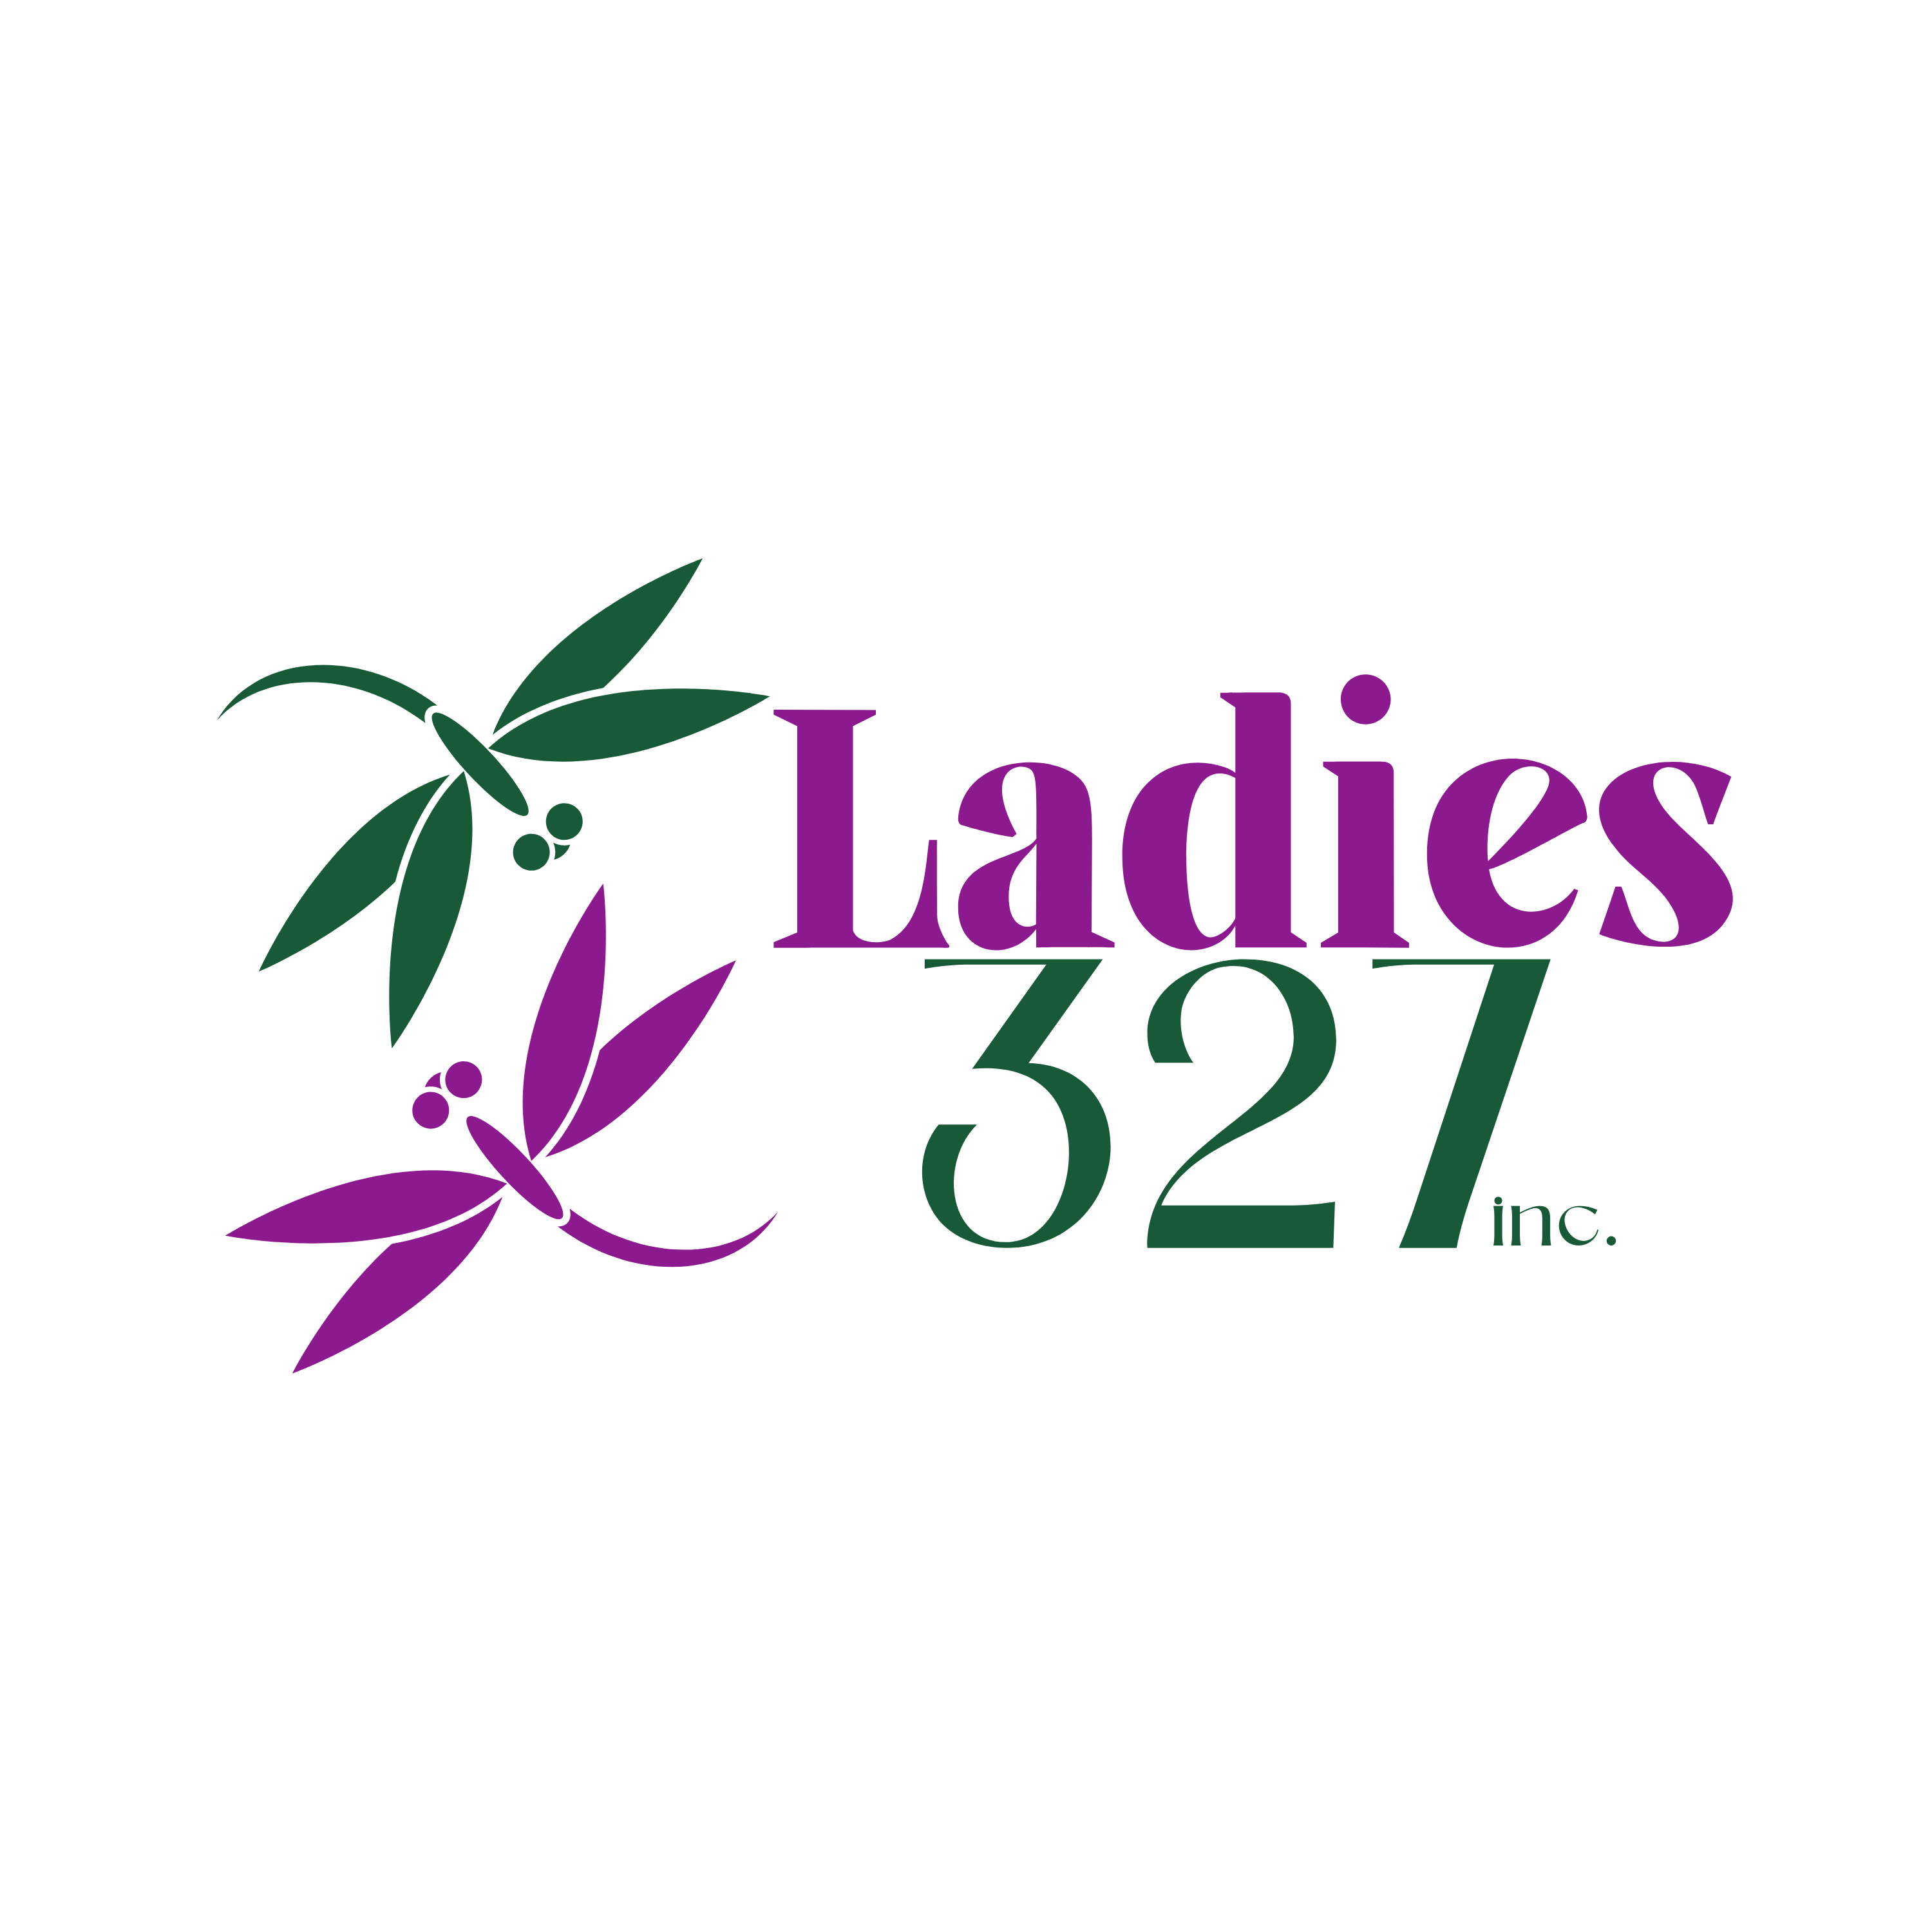 Ladies 327